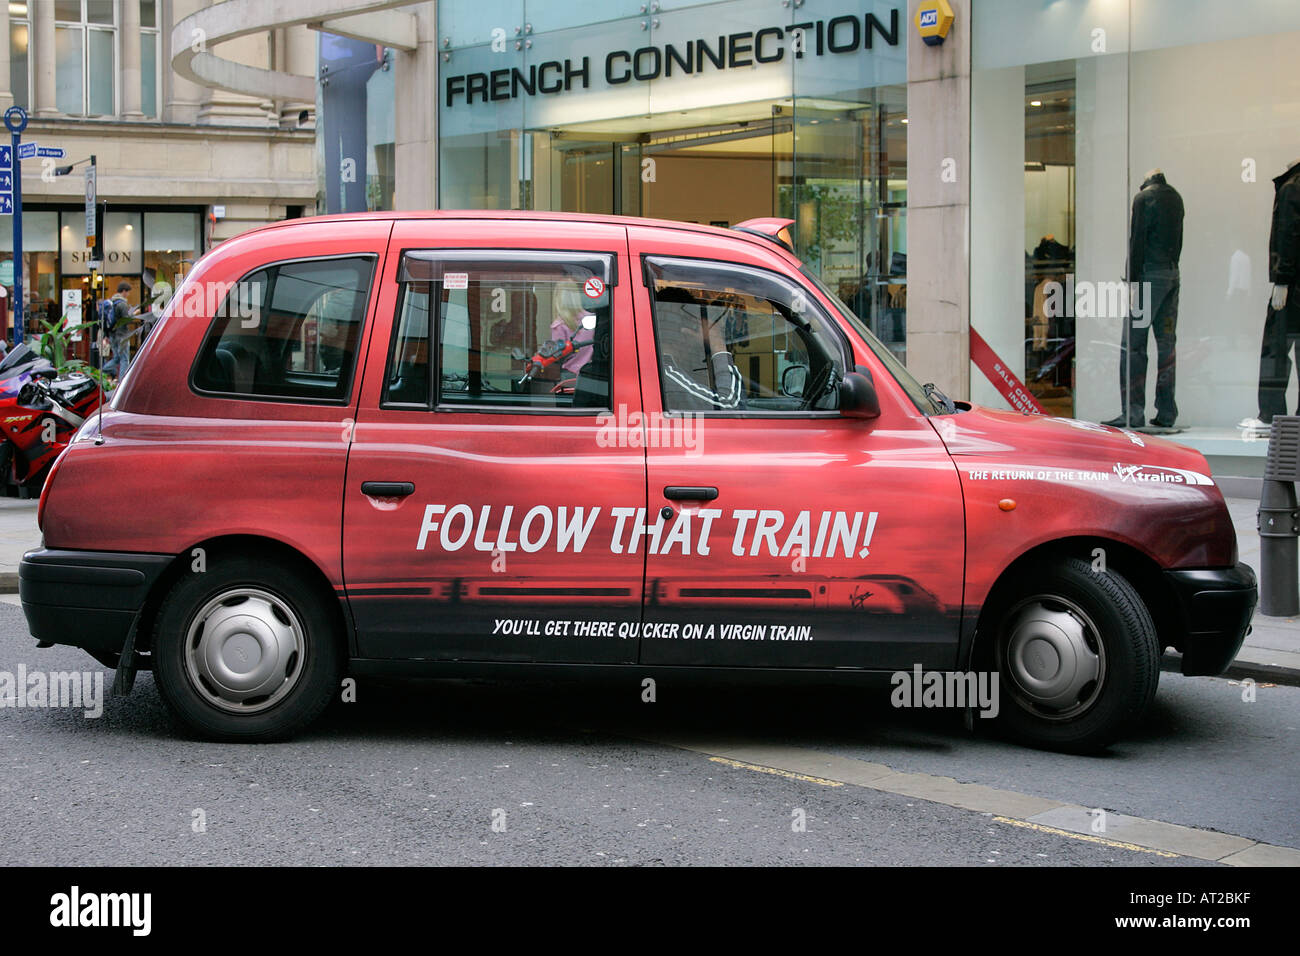 Englisch cab City Taxi Auto traditionellen städtischen Job Beruf Beruf Freunde Großbritannien GB UK britische England Recht Regen Stockfoto